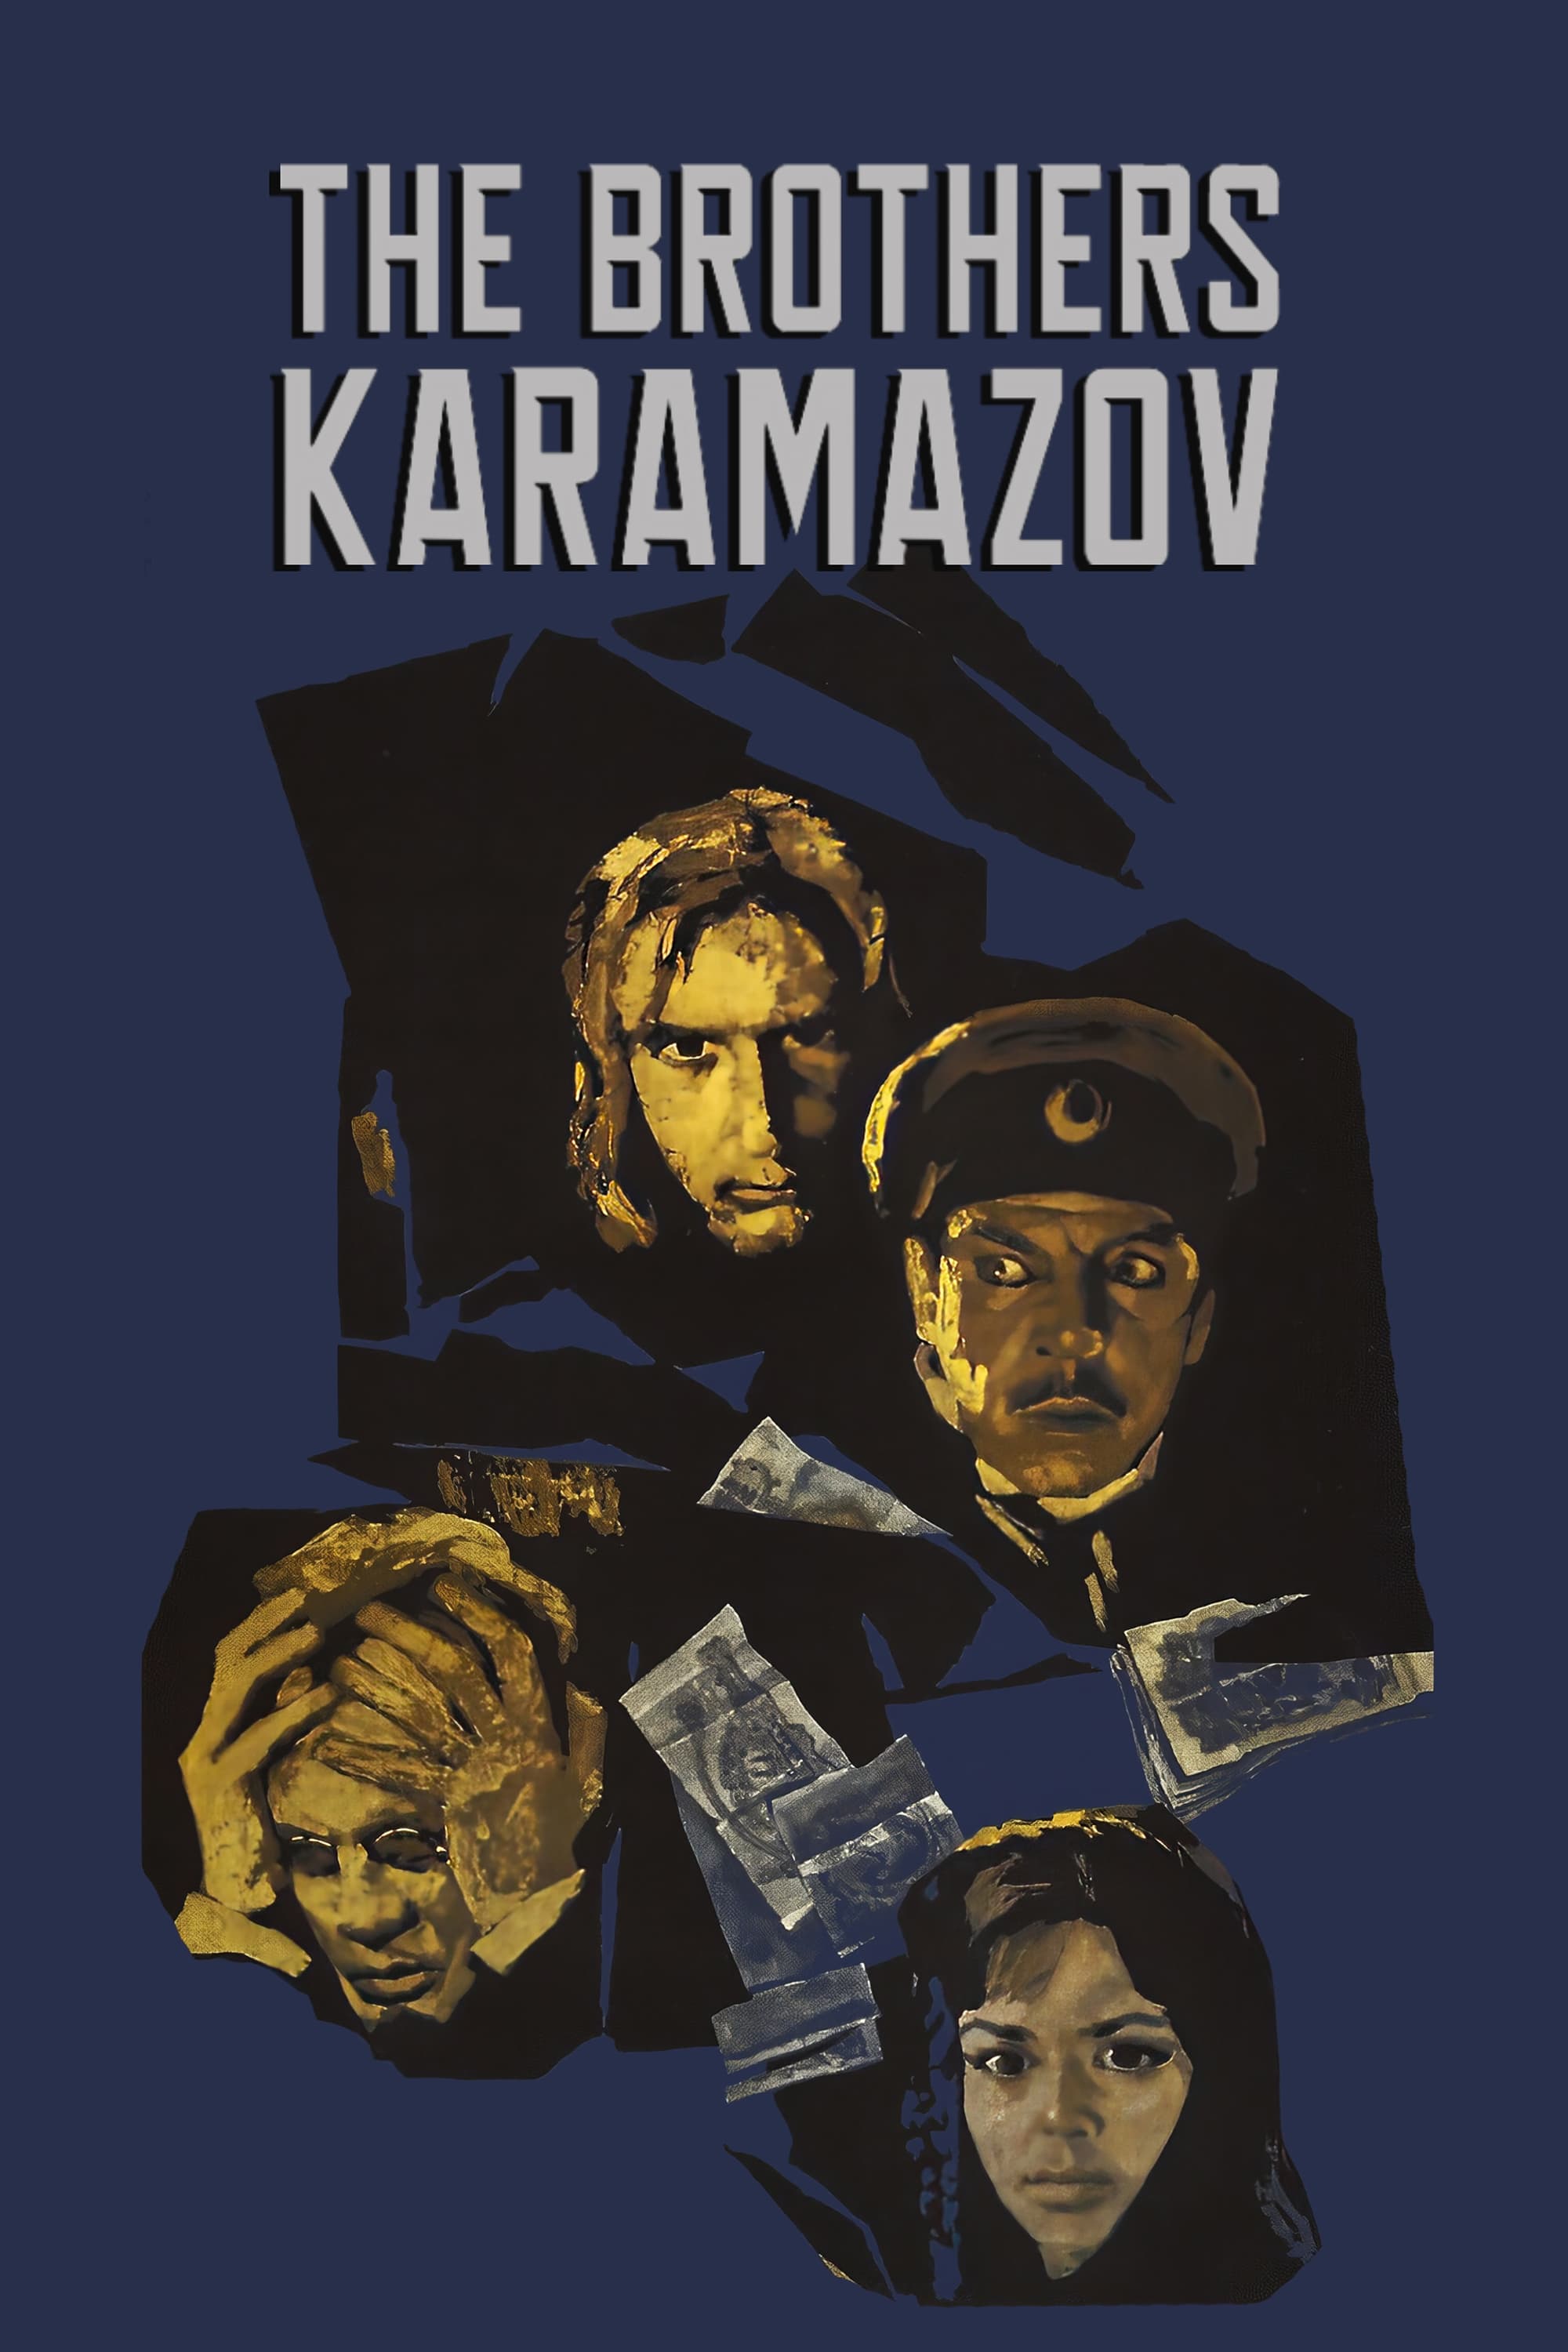 The Brothers Karamazov (1969)